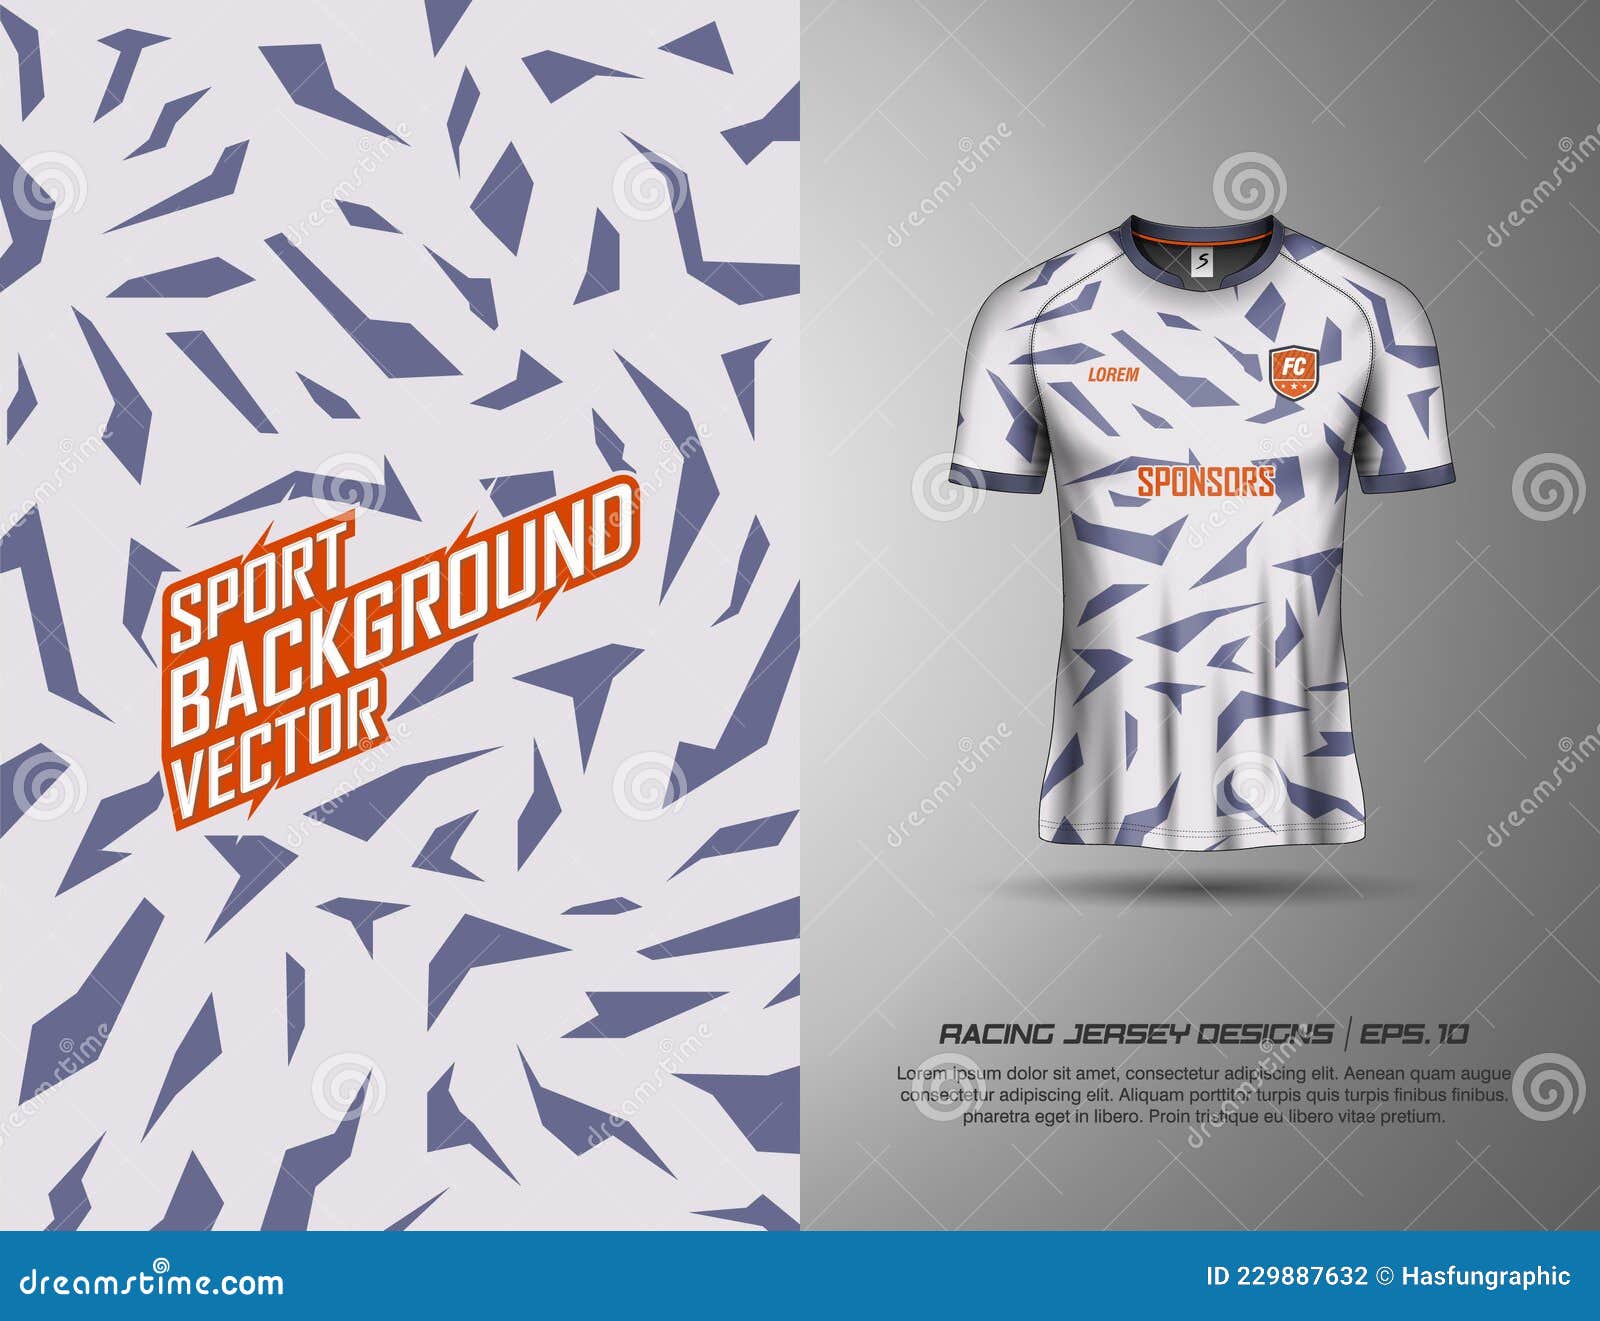 Premium Vector  Orange gray racing jersey design